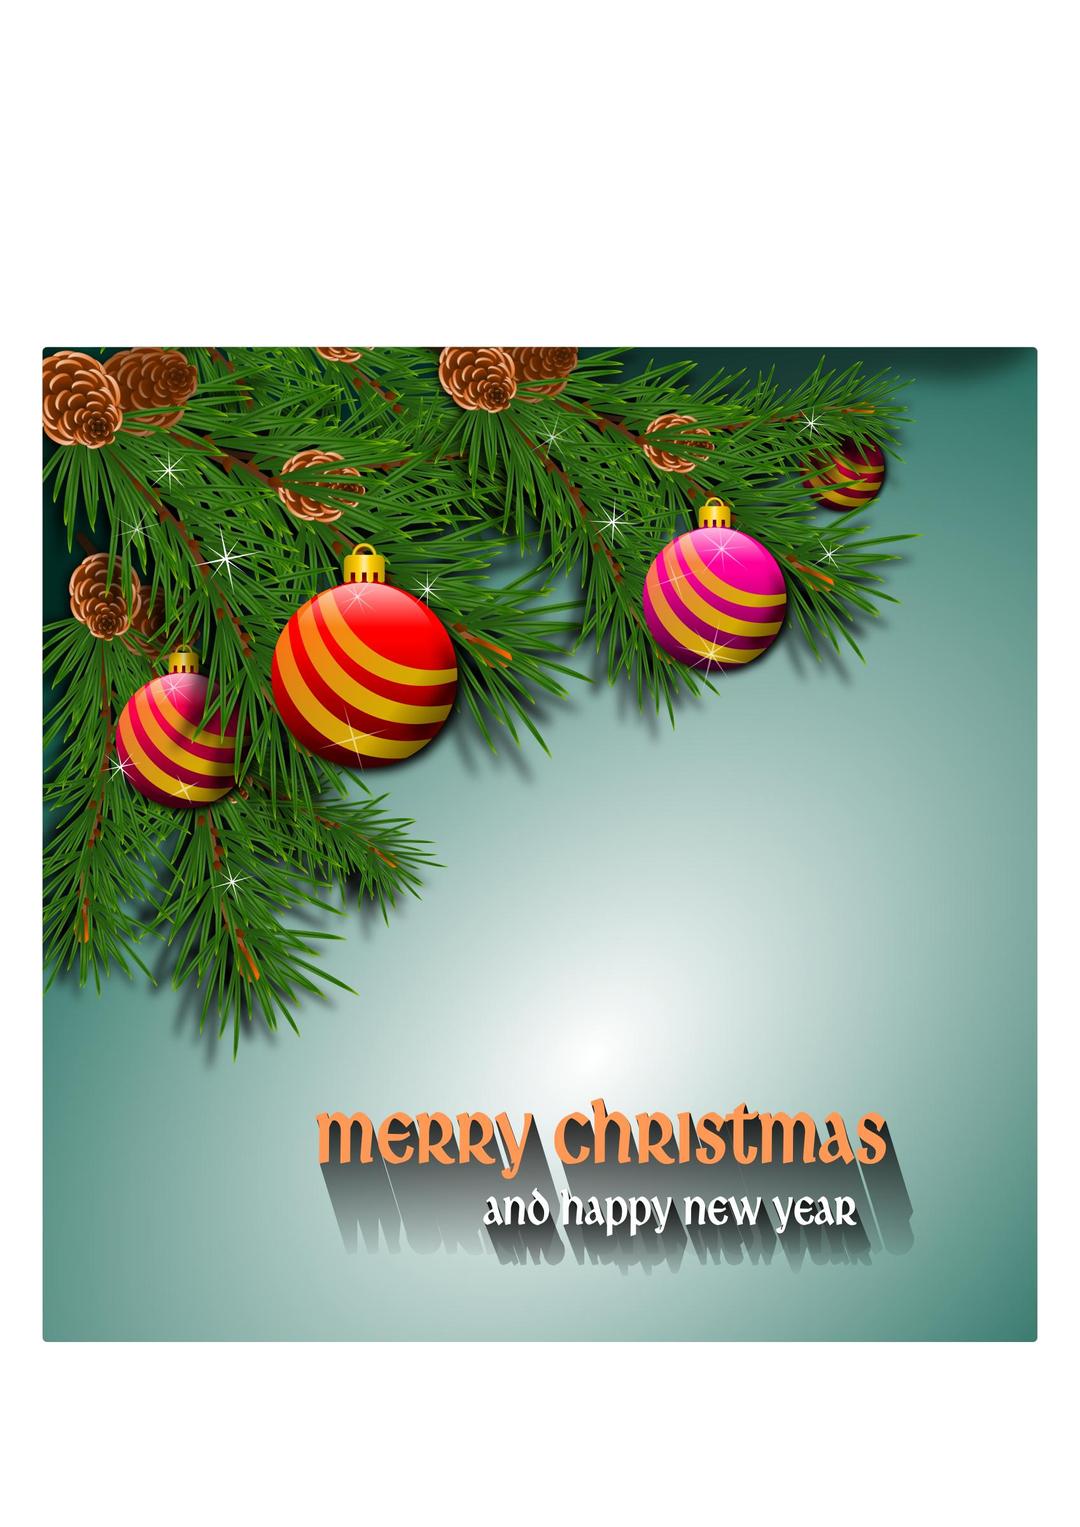 Christmas card 111120161 png transparent